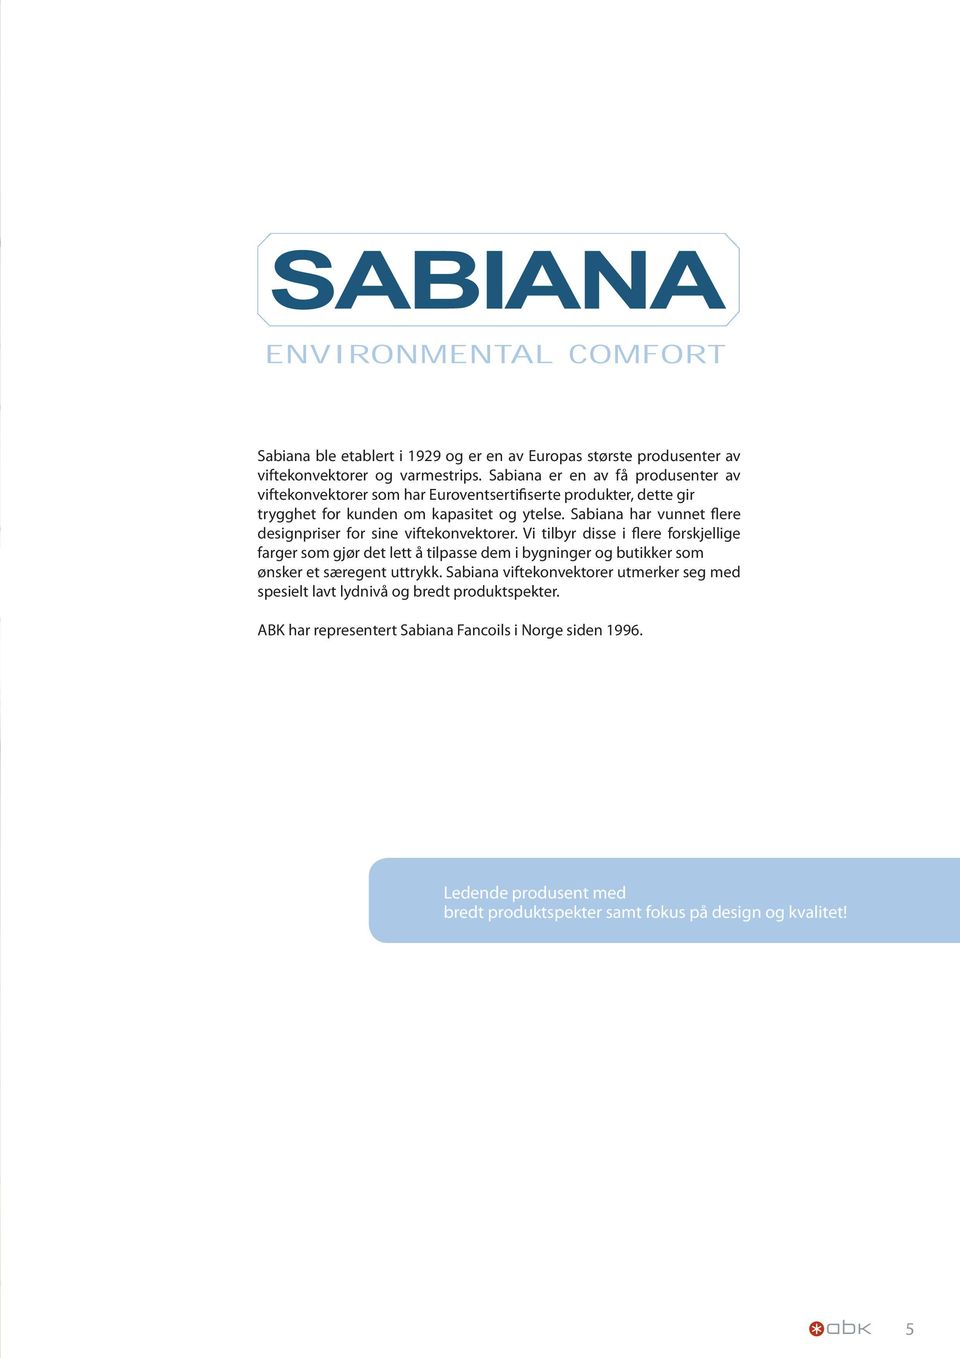 Sabiana har vunnet flere designpriser for sine viftekonvektorer. Vi tilbyr disse i flere forskjellige farger som gjør det lett å tilpasse dem i bygninger og butikker som ønsker et særegent uttrykk.